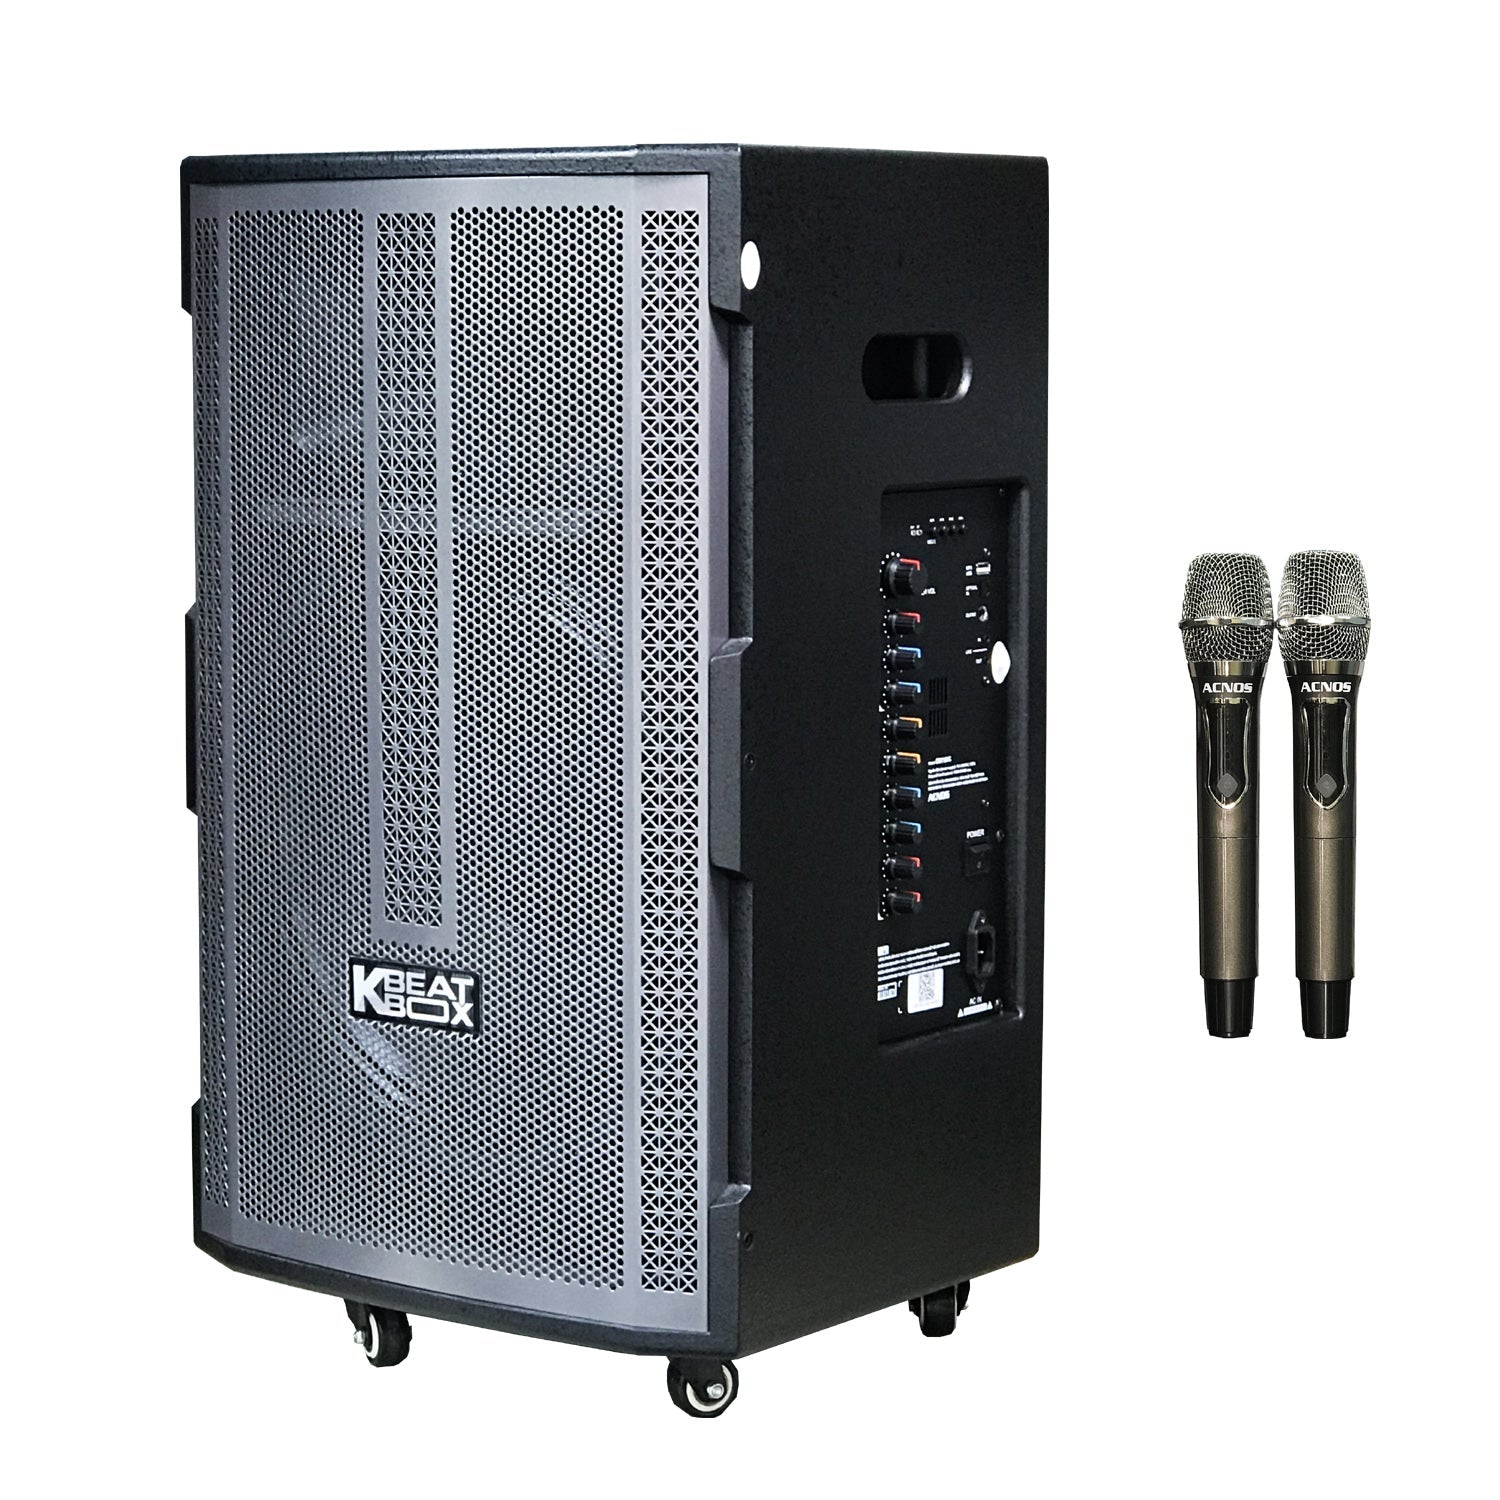 KBeatBox CBX-150G + KTV 15.6" Touch Screen (Package Deal) - Karaoke Home Entertainment